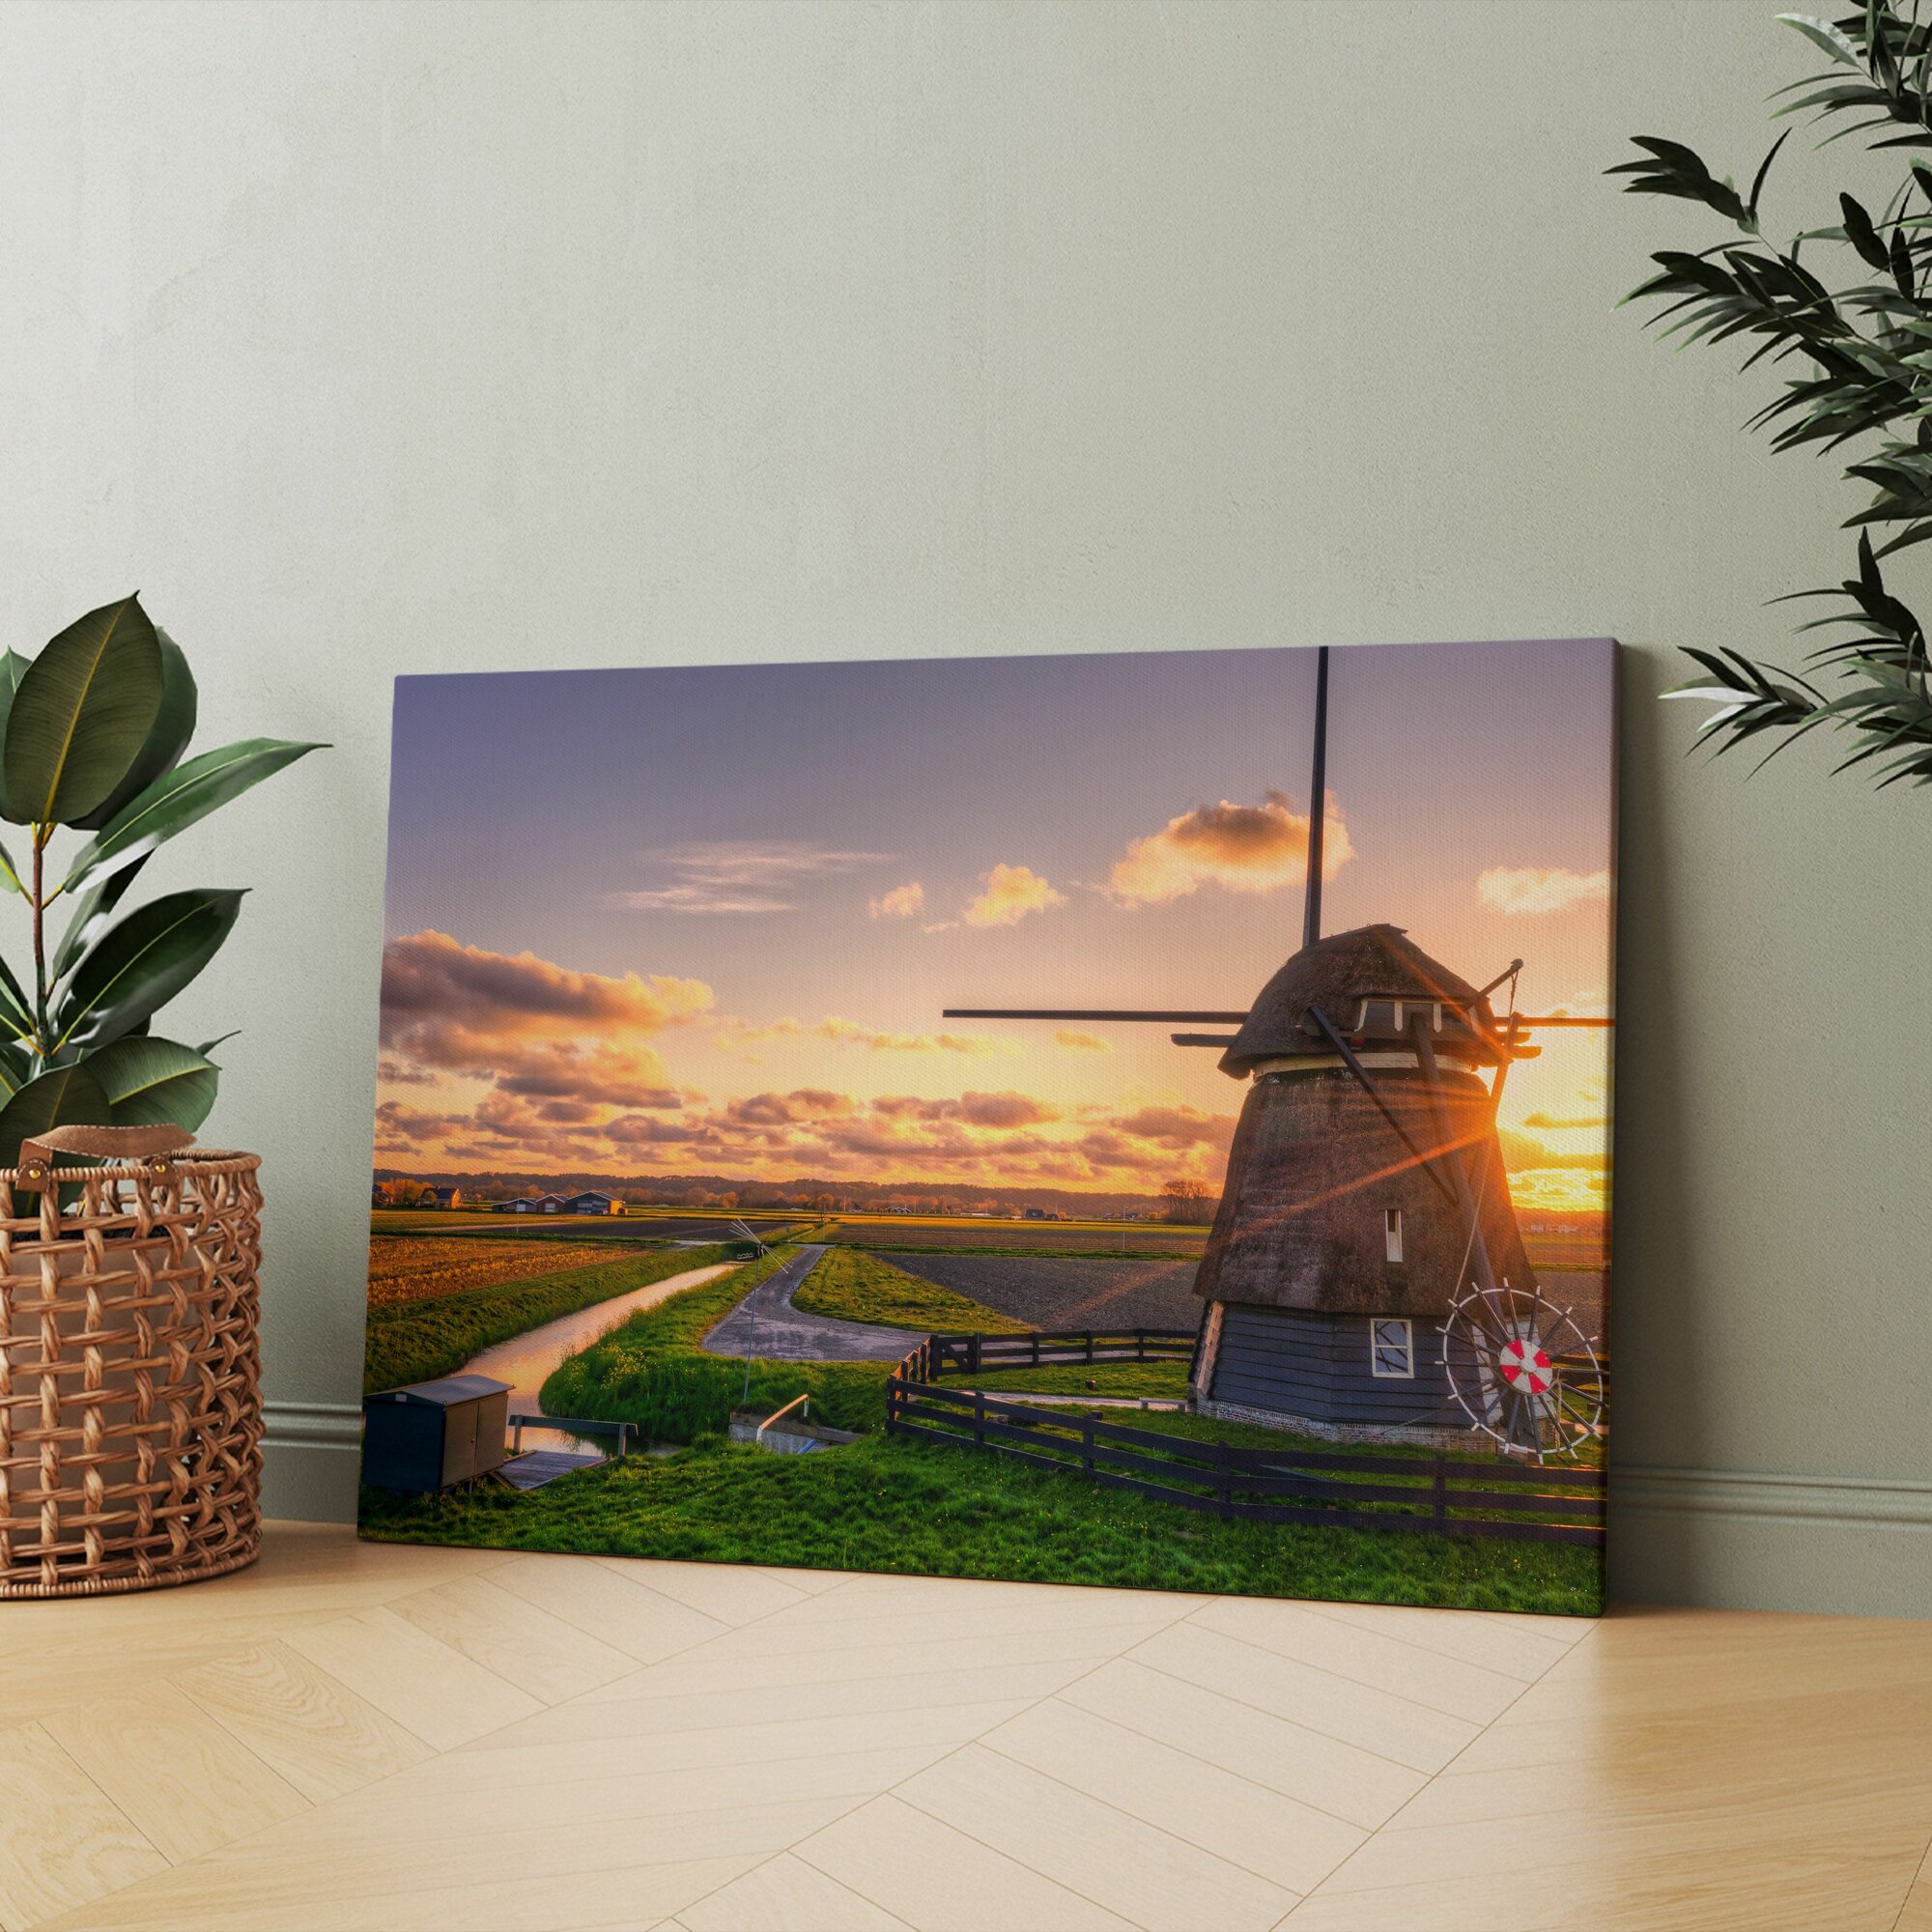 Картина на холсте "Ветряная мельница на вершине пышного зеленого поля" 50x70 см. Интерьерная, на стену.